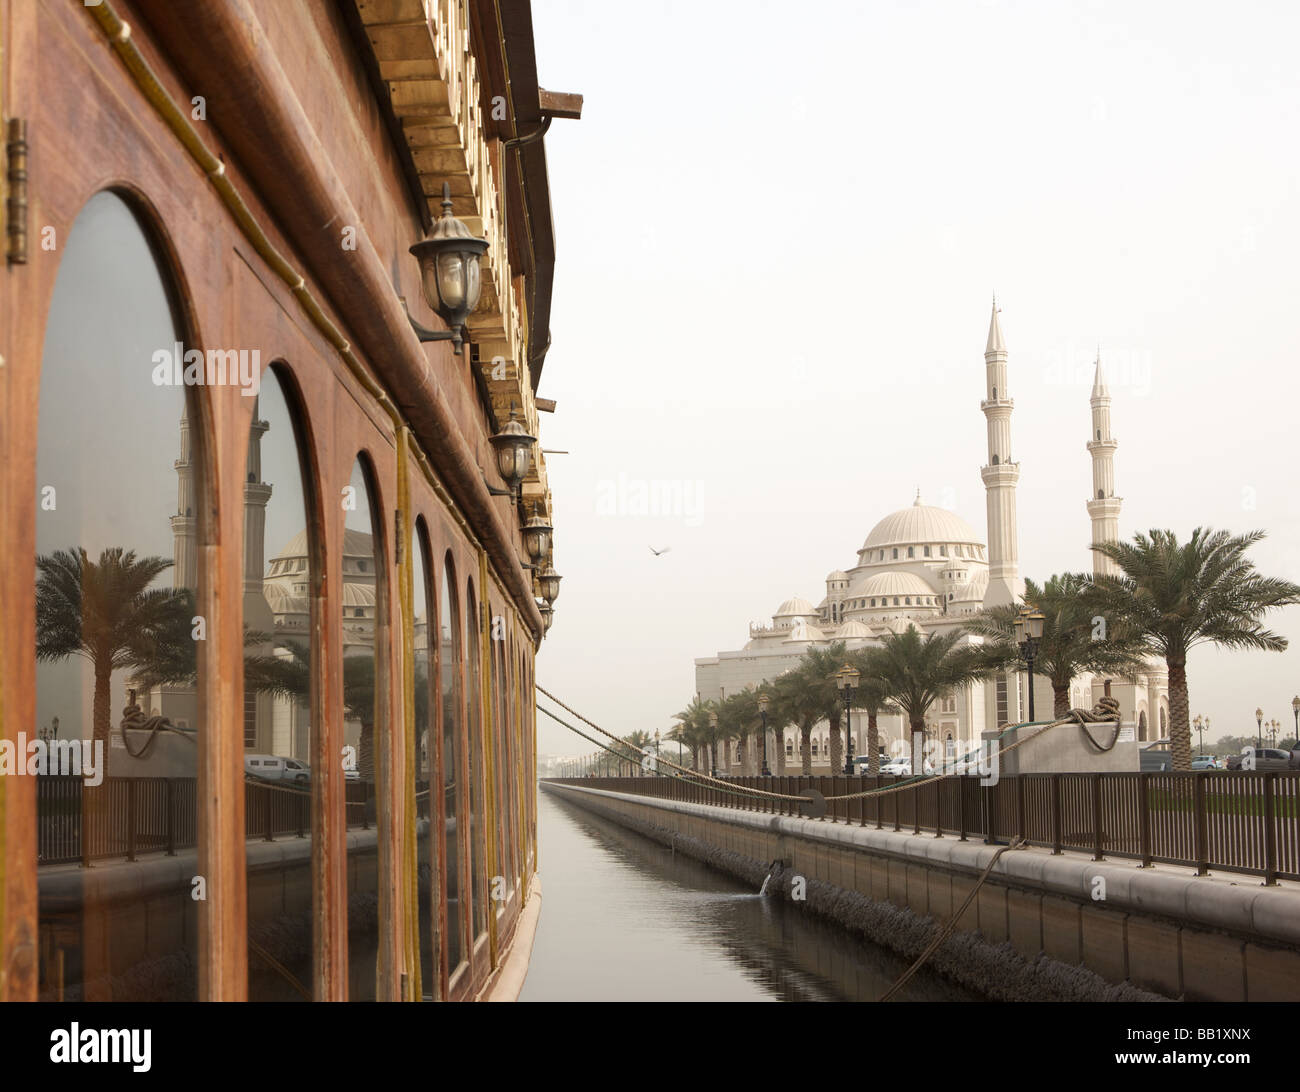 Vue de la mosquée Al Noor, Sharjah, Émirats arabes unis Banque D'Images